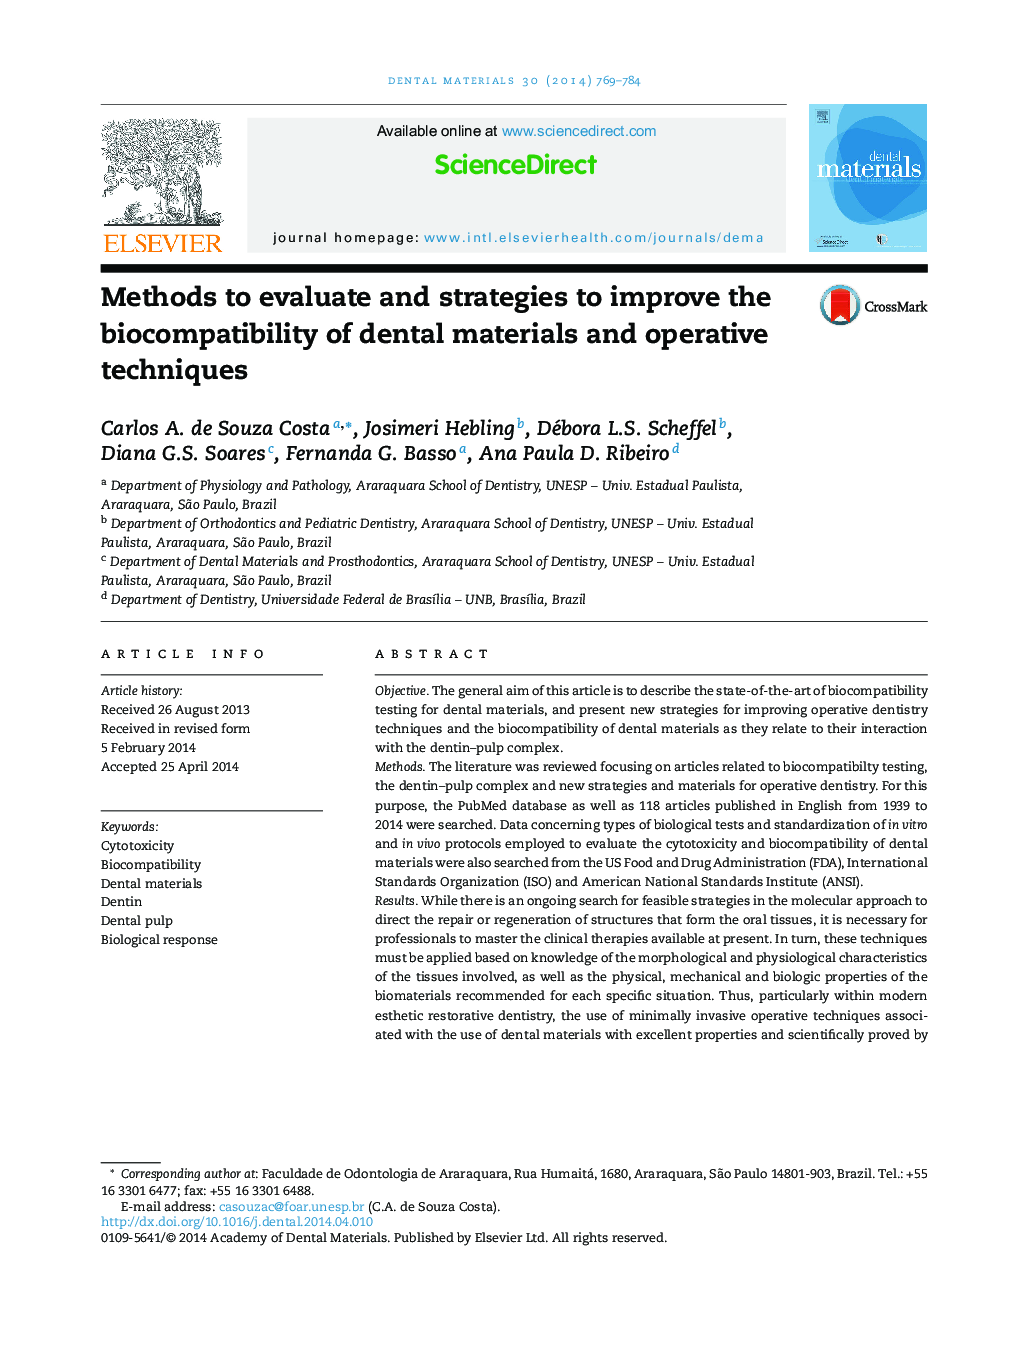 روش ها برای ارزیابی و استراتژی های بهبود سازگاری زیستی مواد دندانی و تکنیک های عملیاتی 